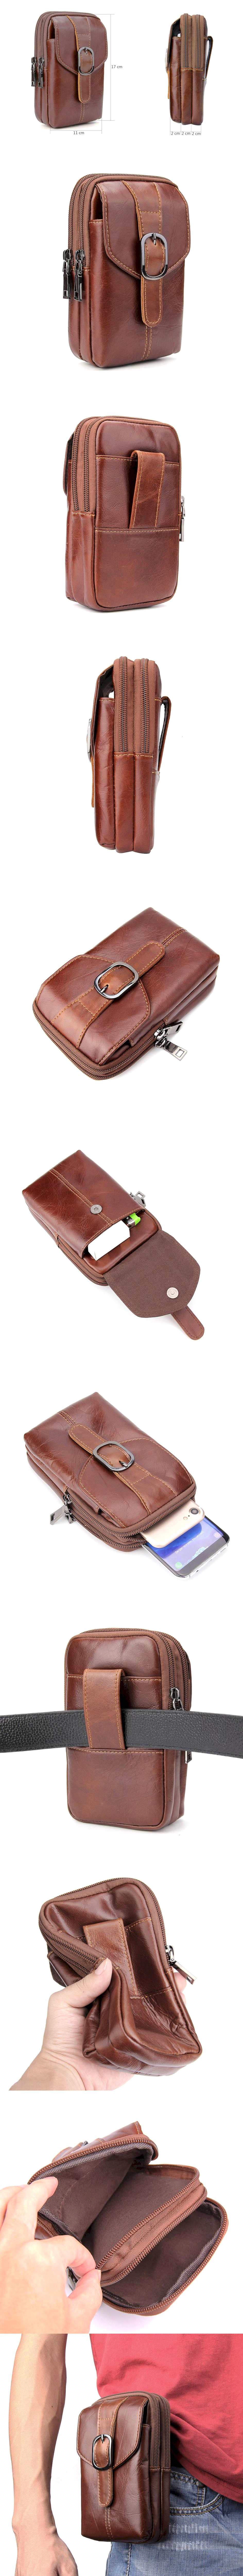 730-直式腰包-子母磁扣翻蓋大容量雙拉鍊收納包真皮三手機腰包